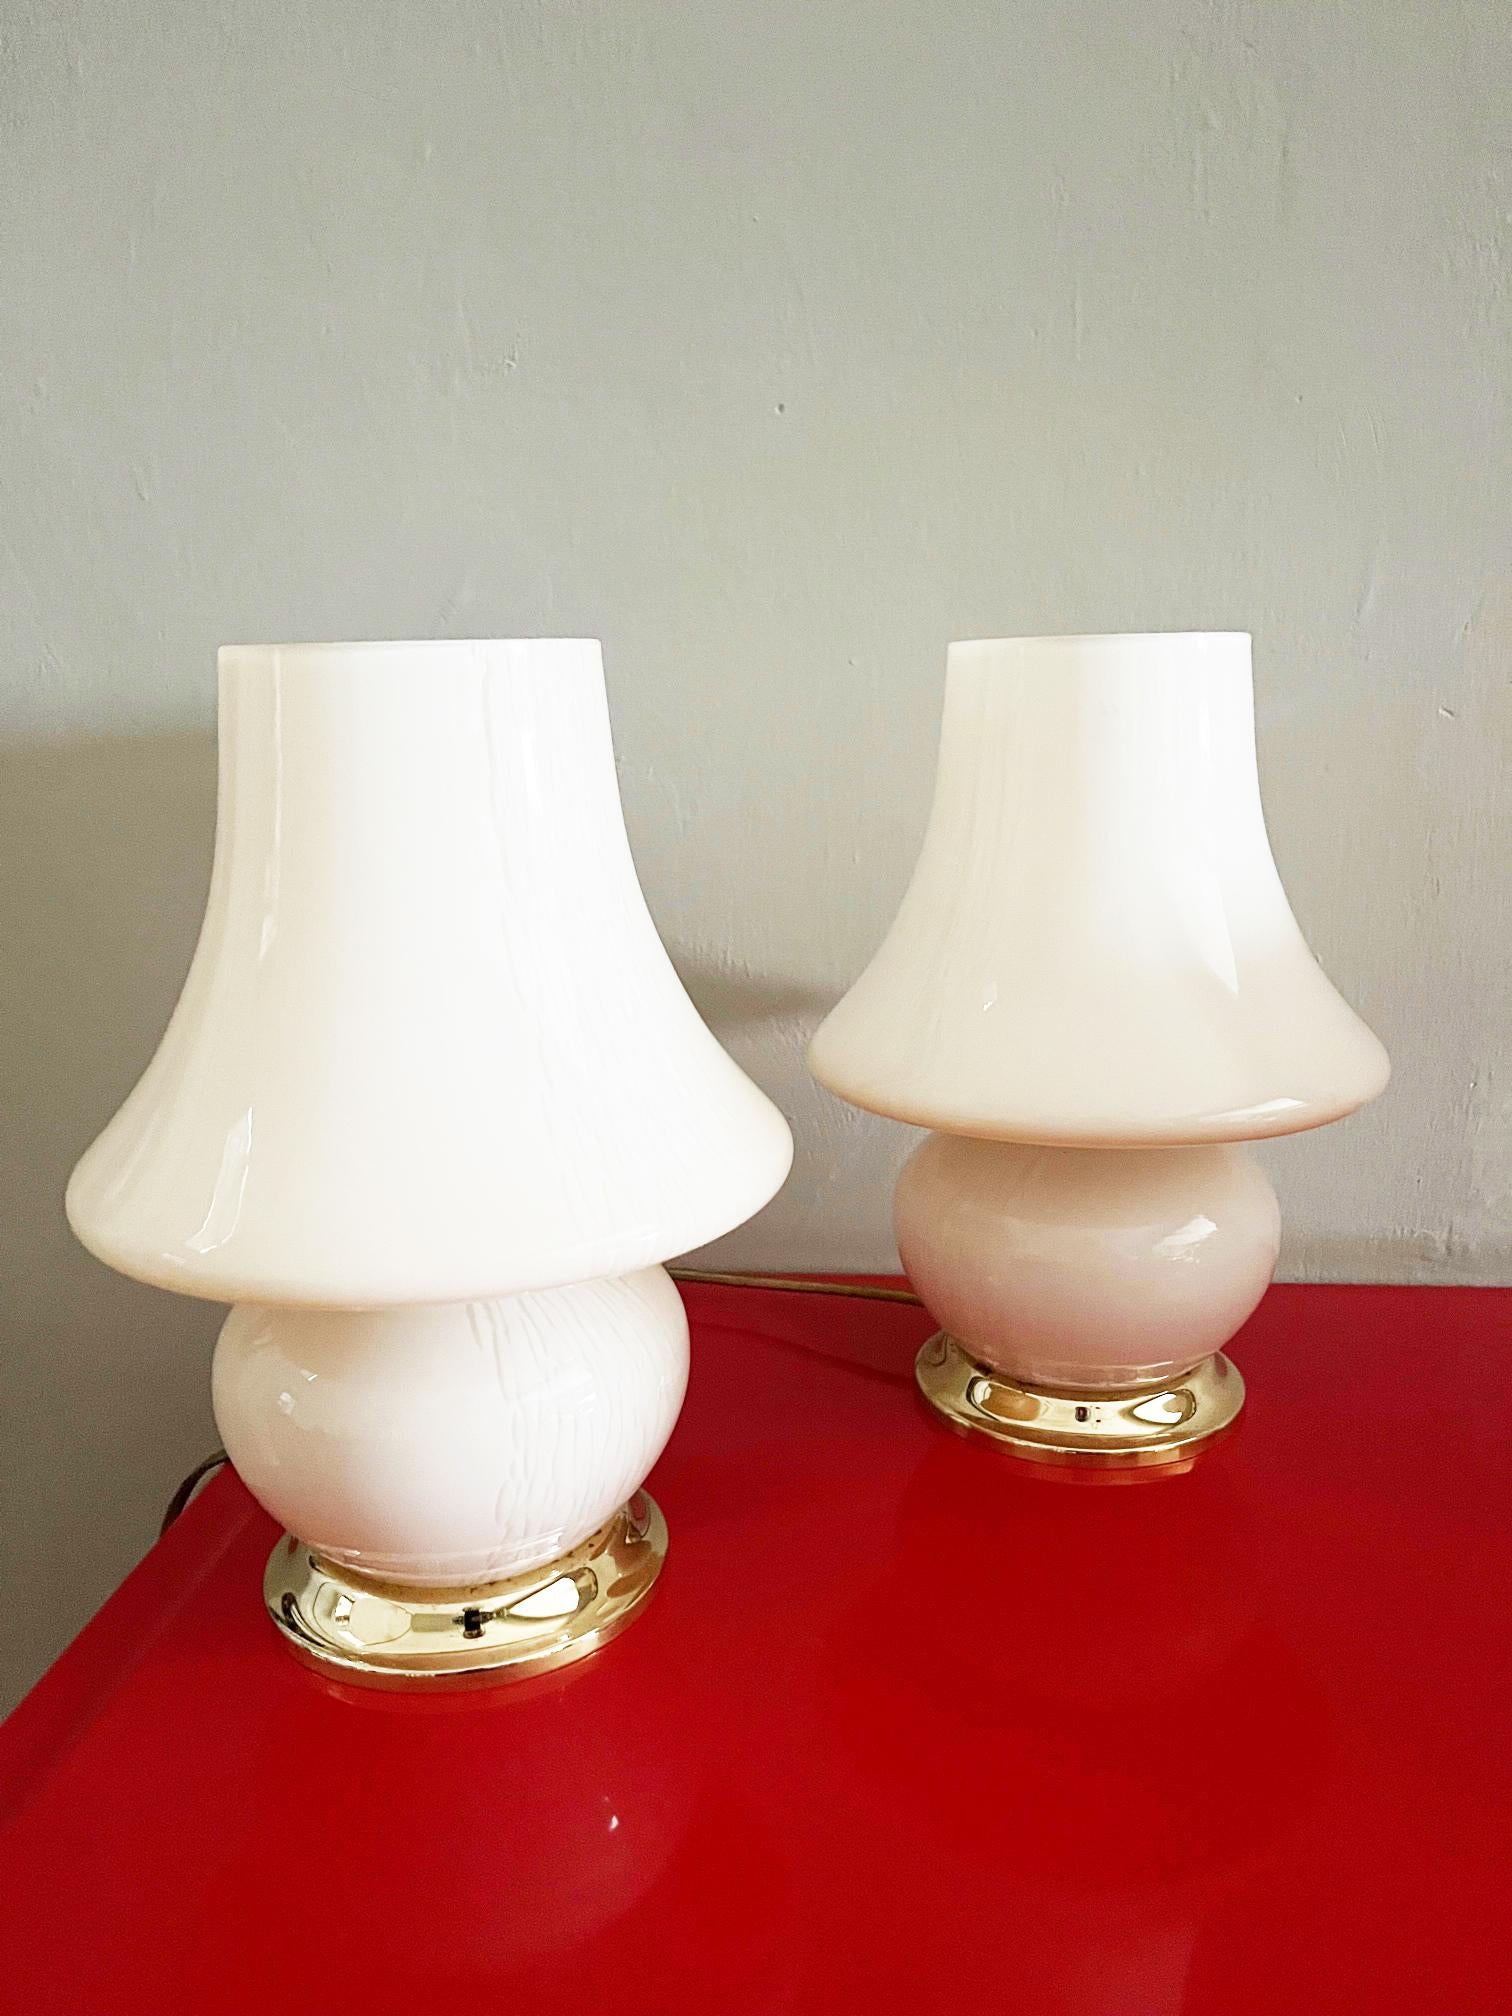 Paire de lampes de table en forme de champignon beige avec base en laiton vintage des années 1970

Intact et fonctionnel 

Avec système électrique 

Mesures en cm
30 x cm 20